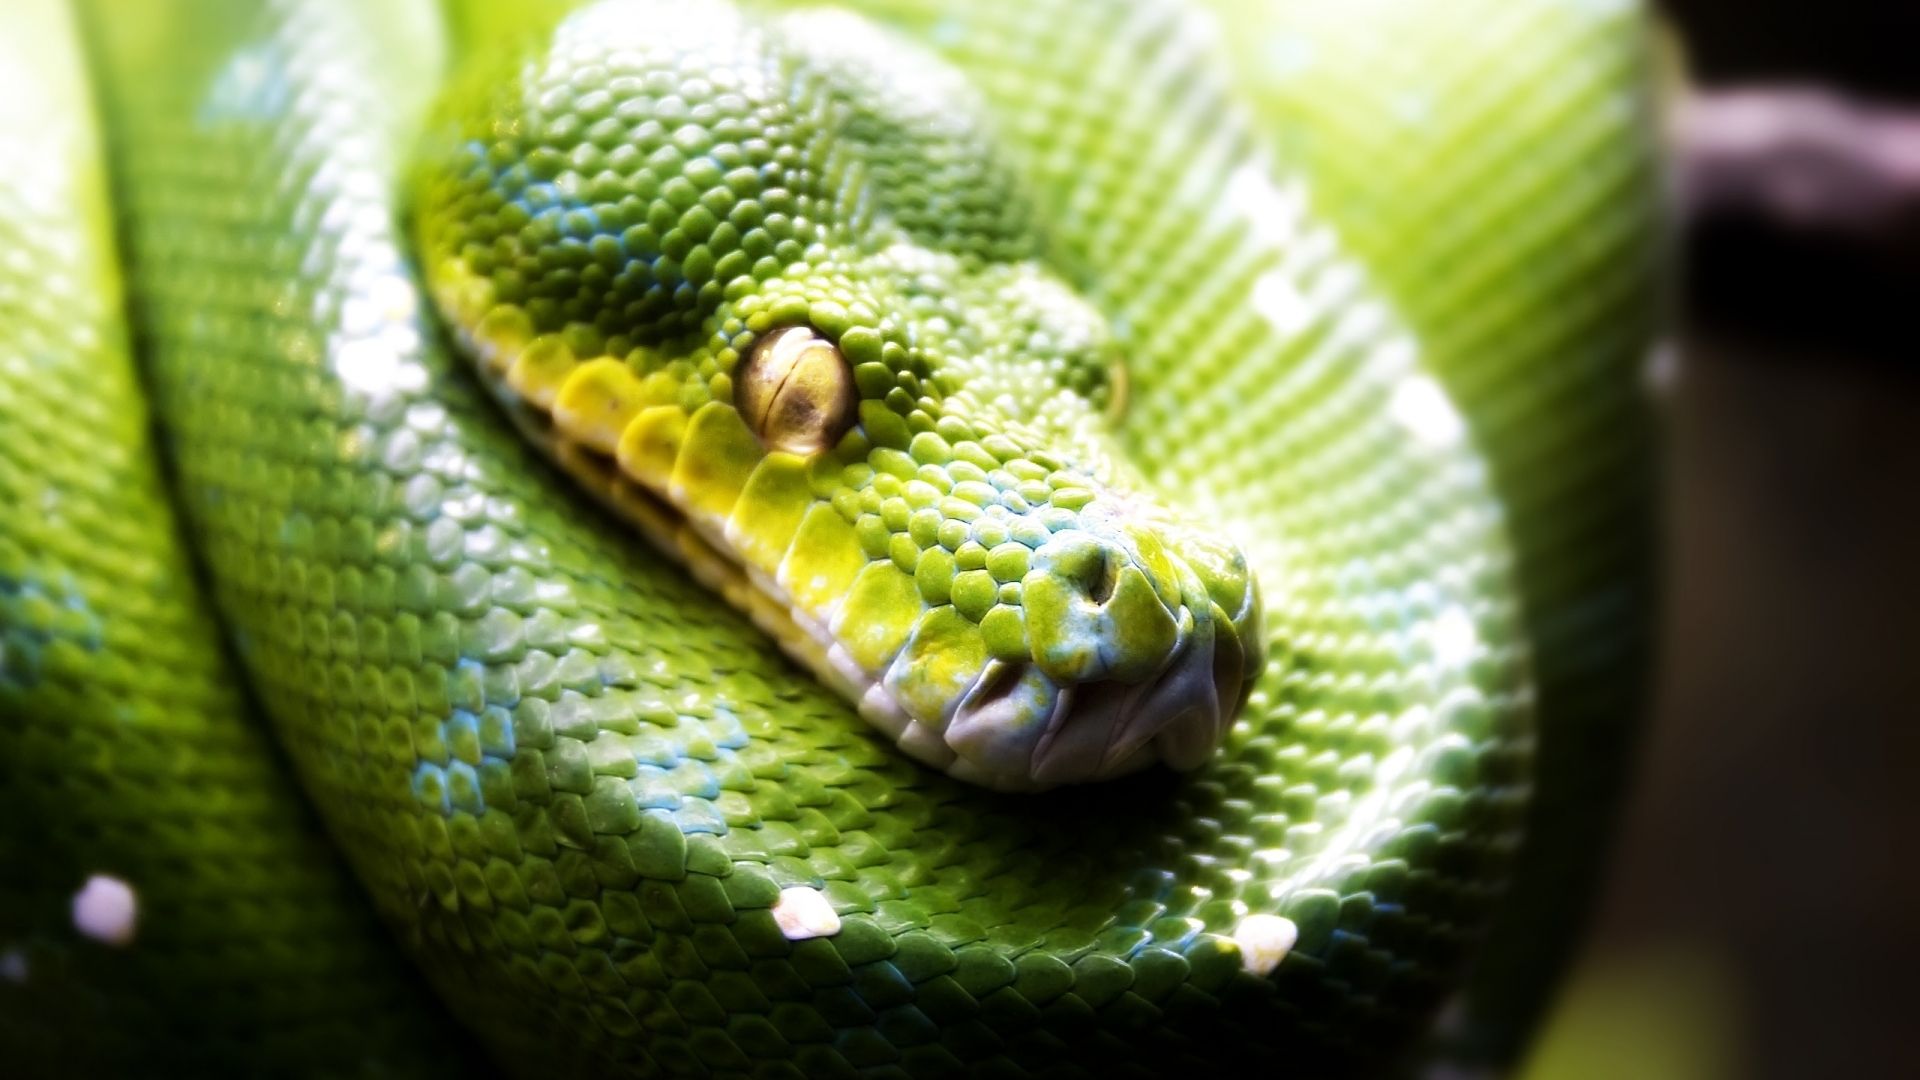 Green Snake for 1920 x 1080 HDTV 1080p resolution